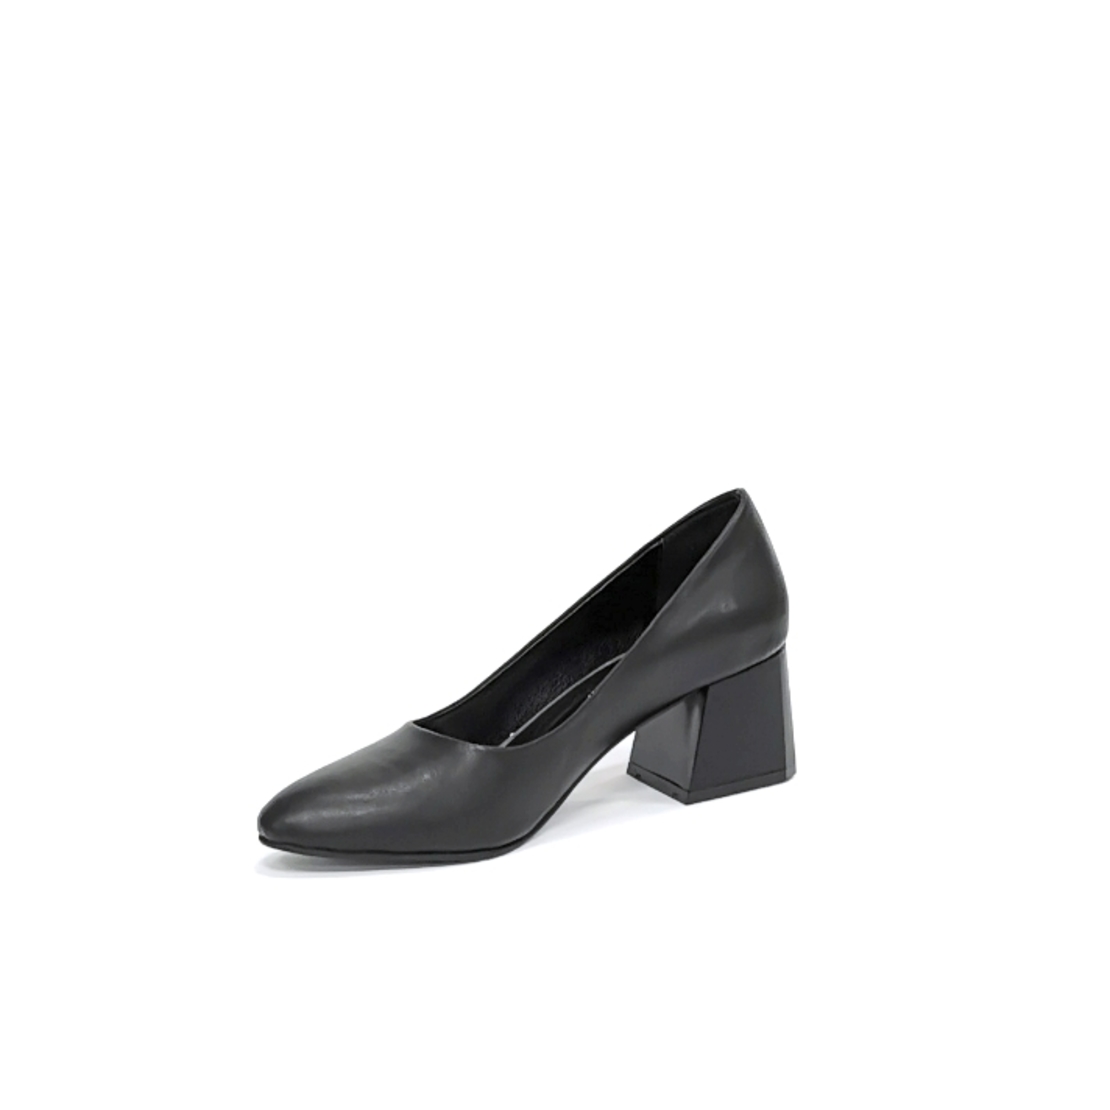 Женские элегантные туфли из натуральной кожи черного цвета/7850